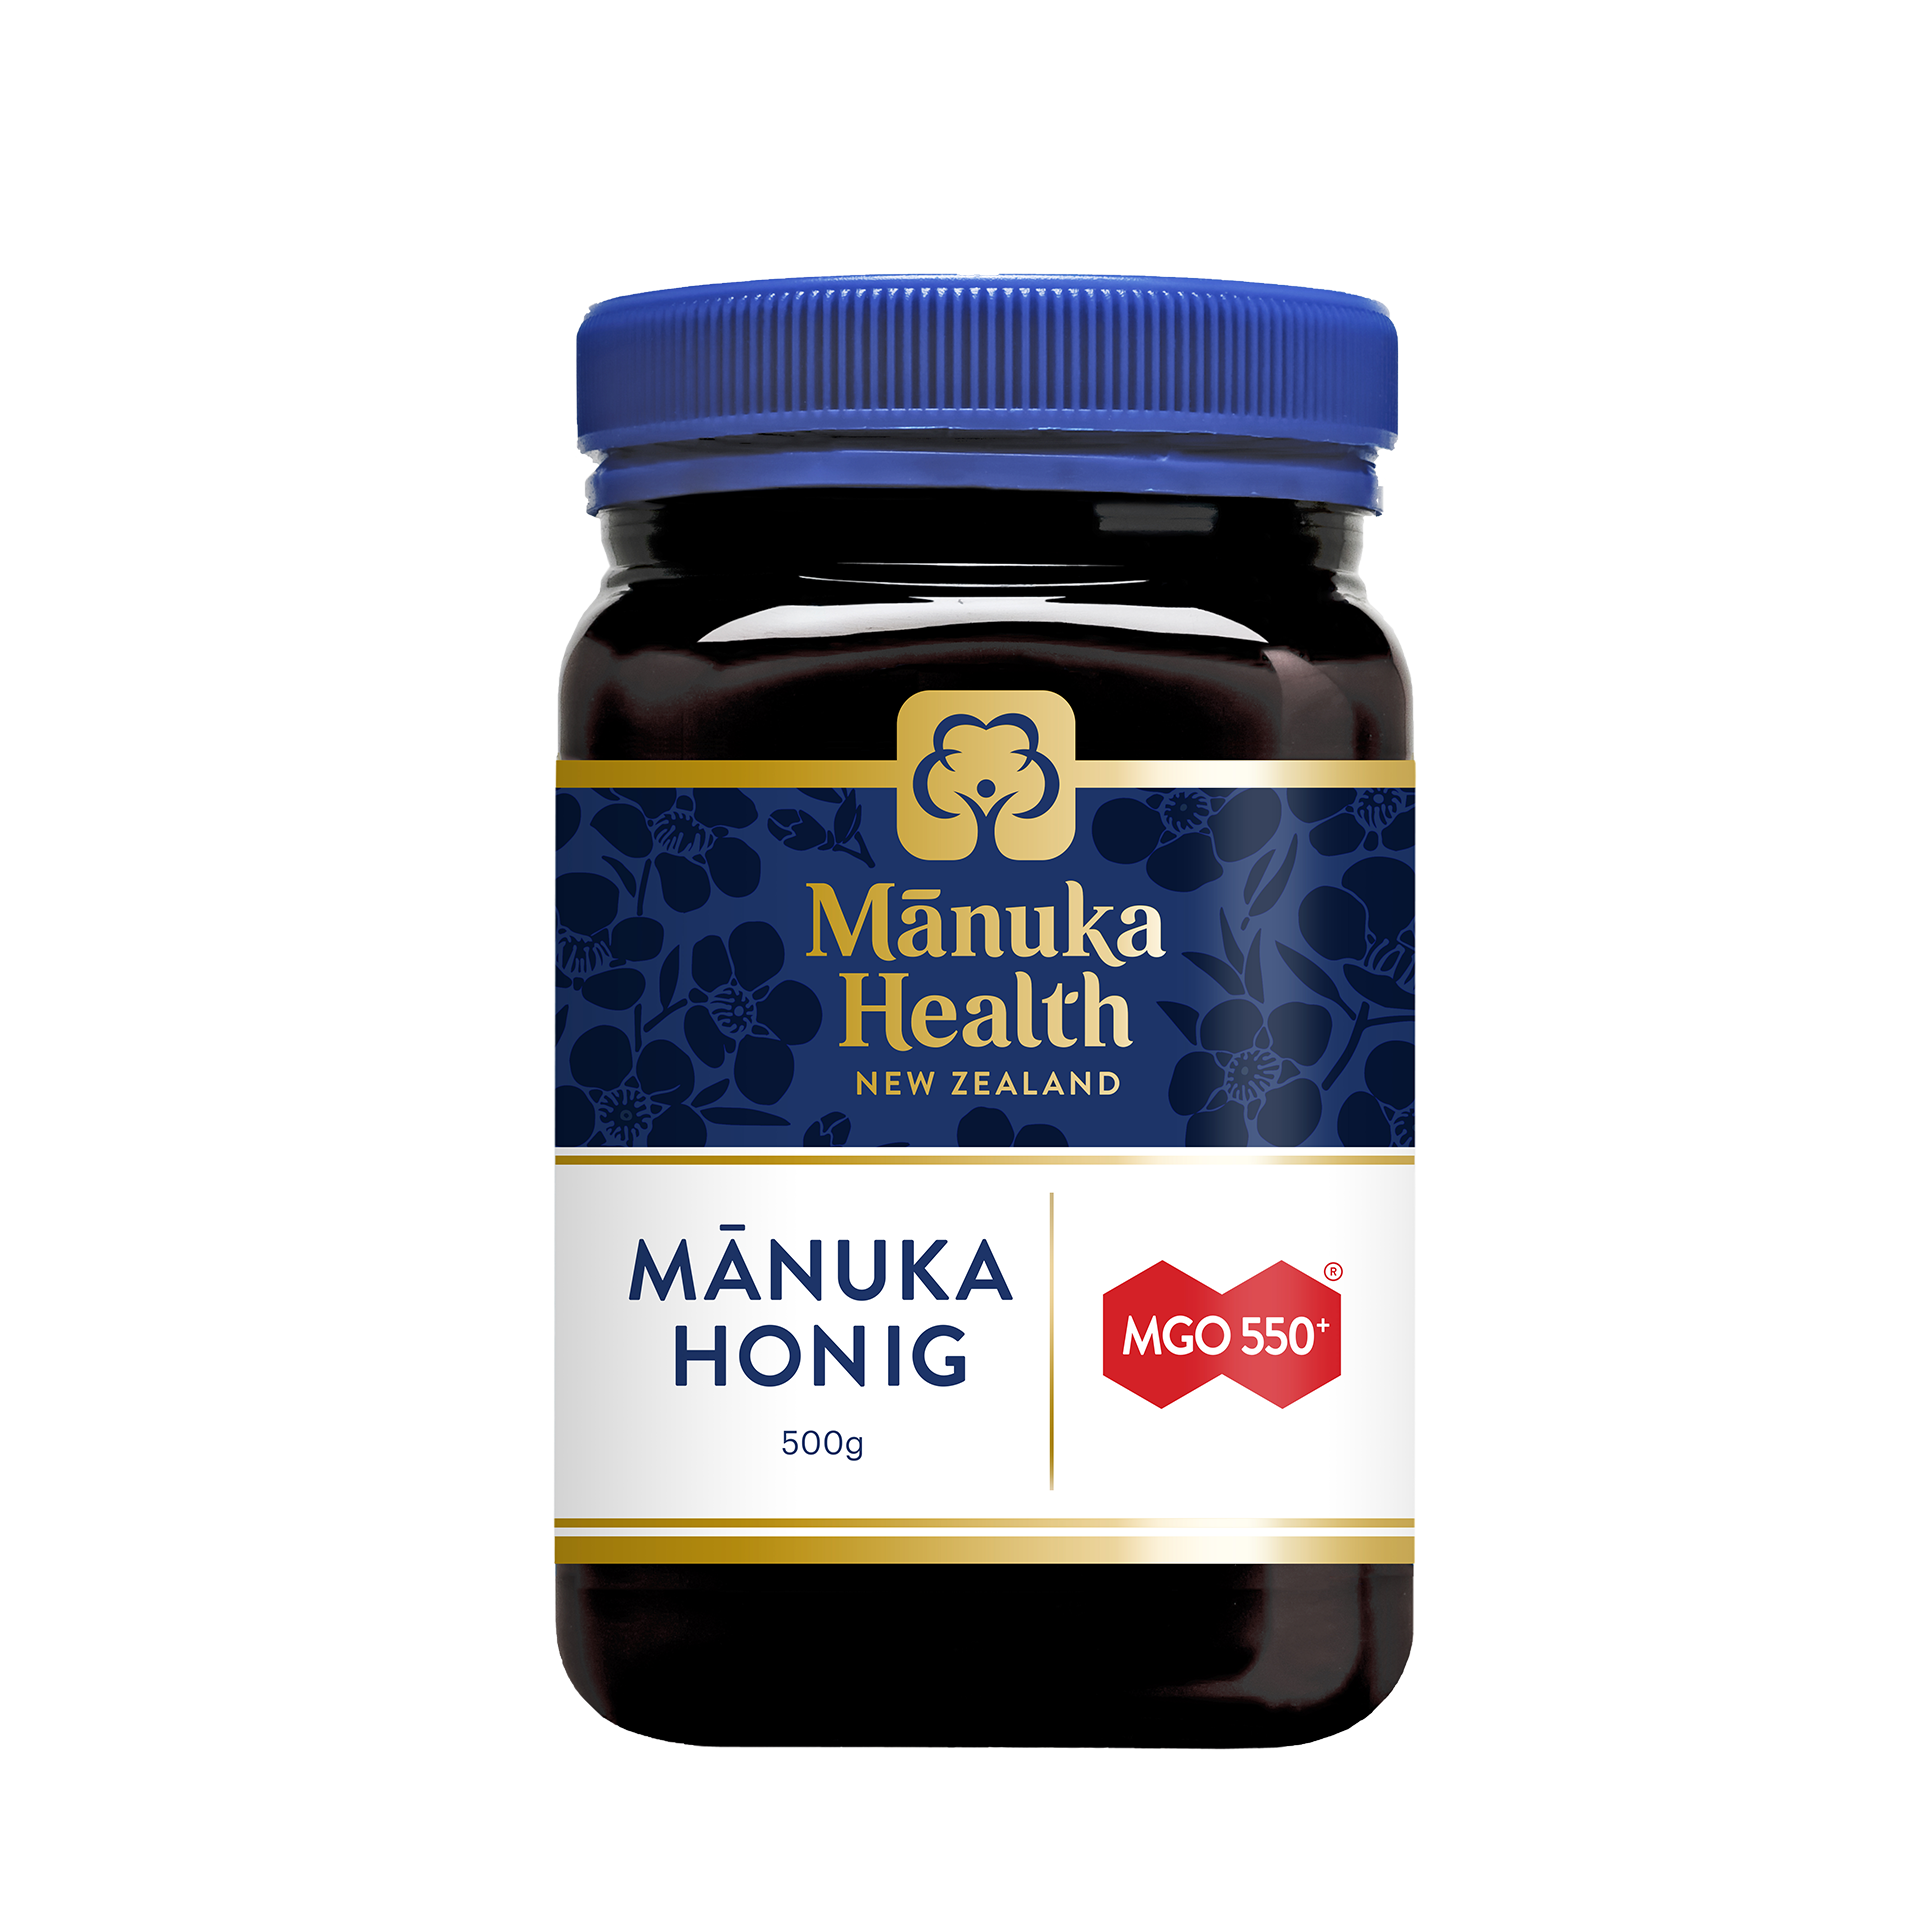 Manuka Honig MGO 550+, 500 g